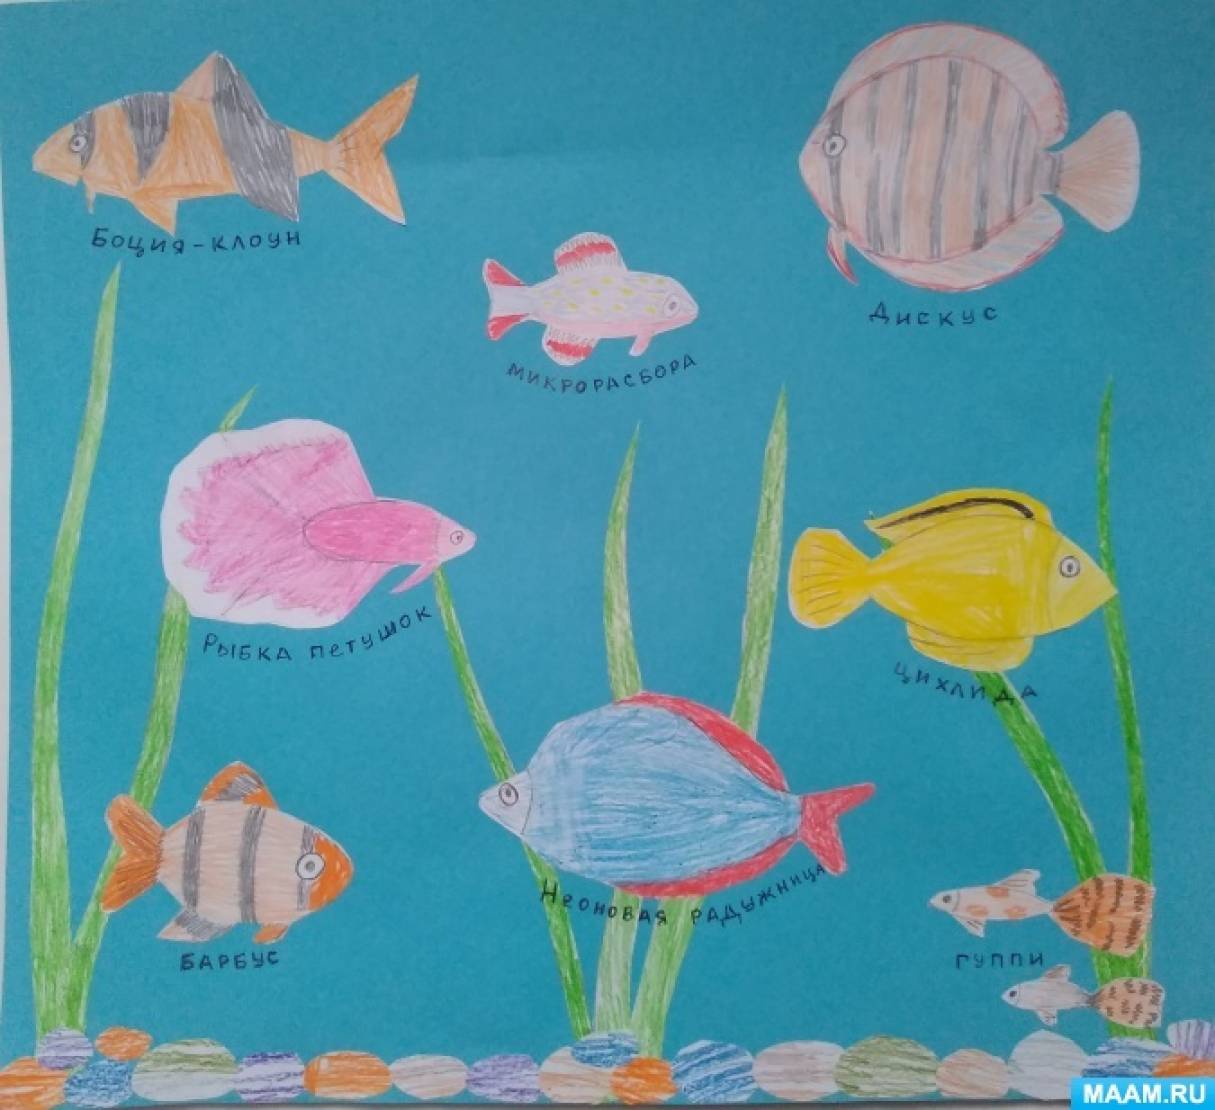 Сидим дома с пользой. Материал для бесед с детьми «Что мы знаем об аквариумных рыбках?»